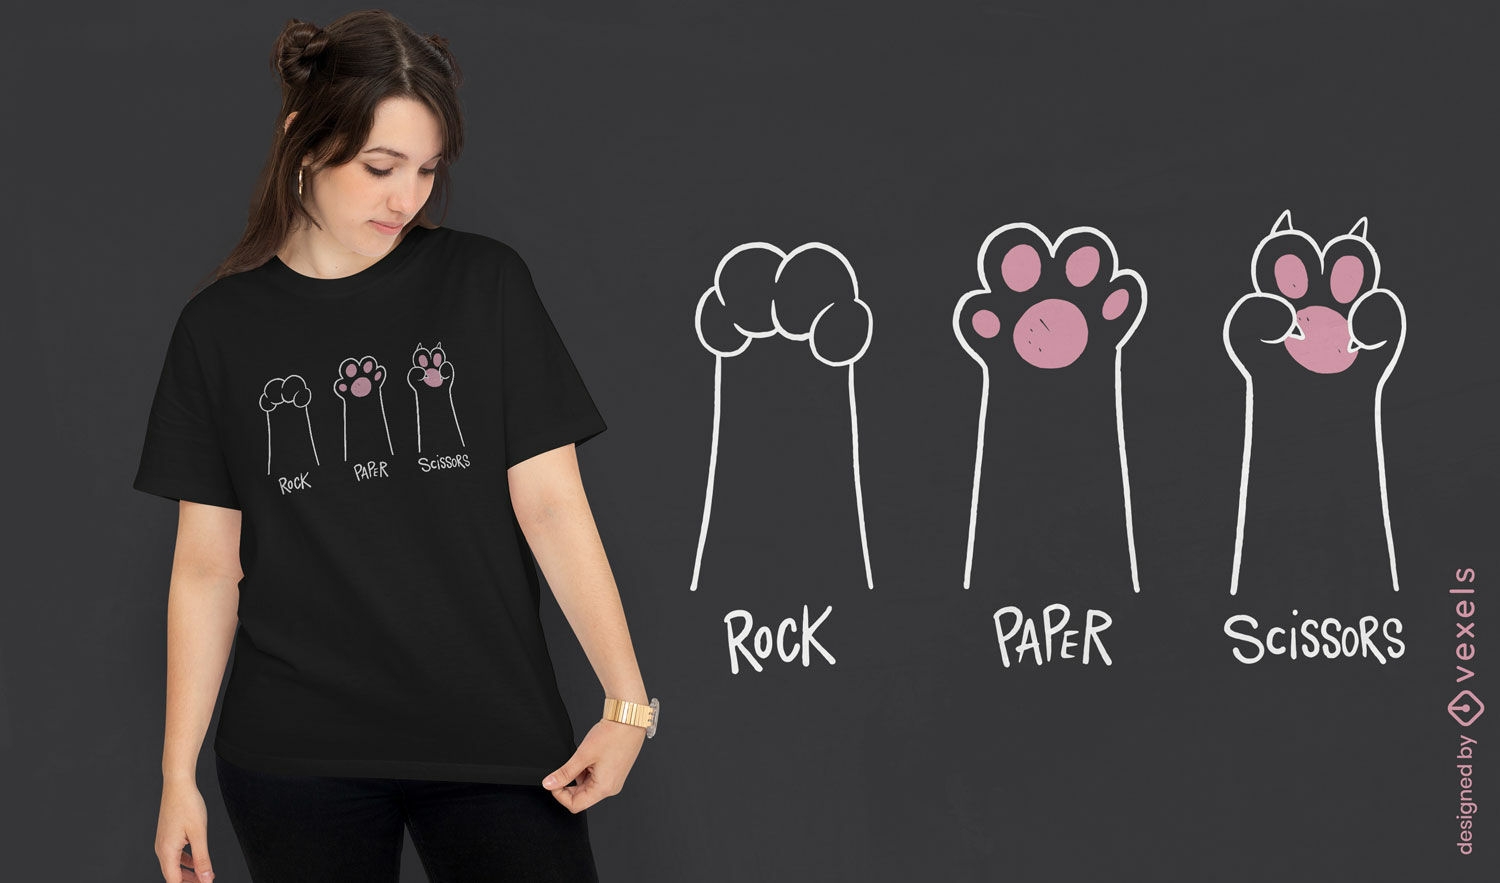 Diseño minimalista de camiseta de gato piedra, papel y tijera.